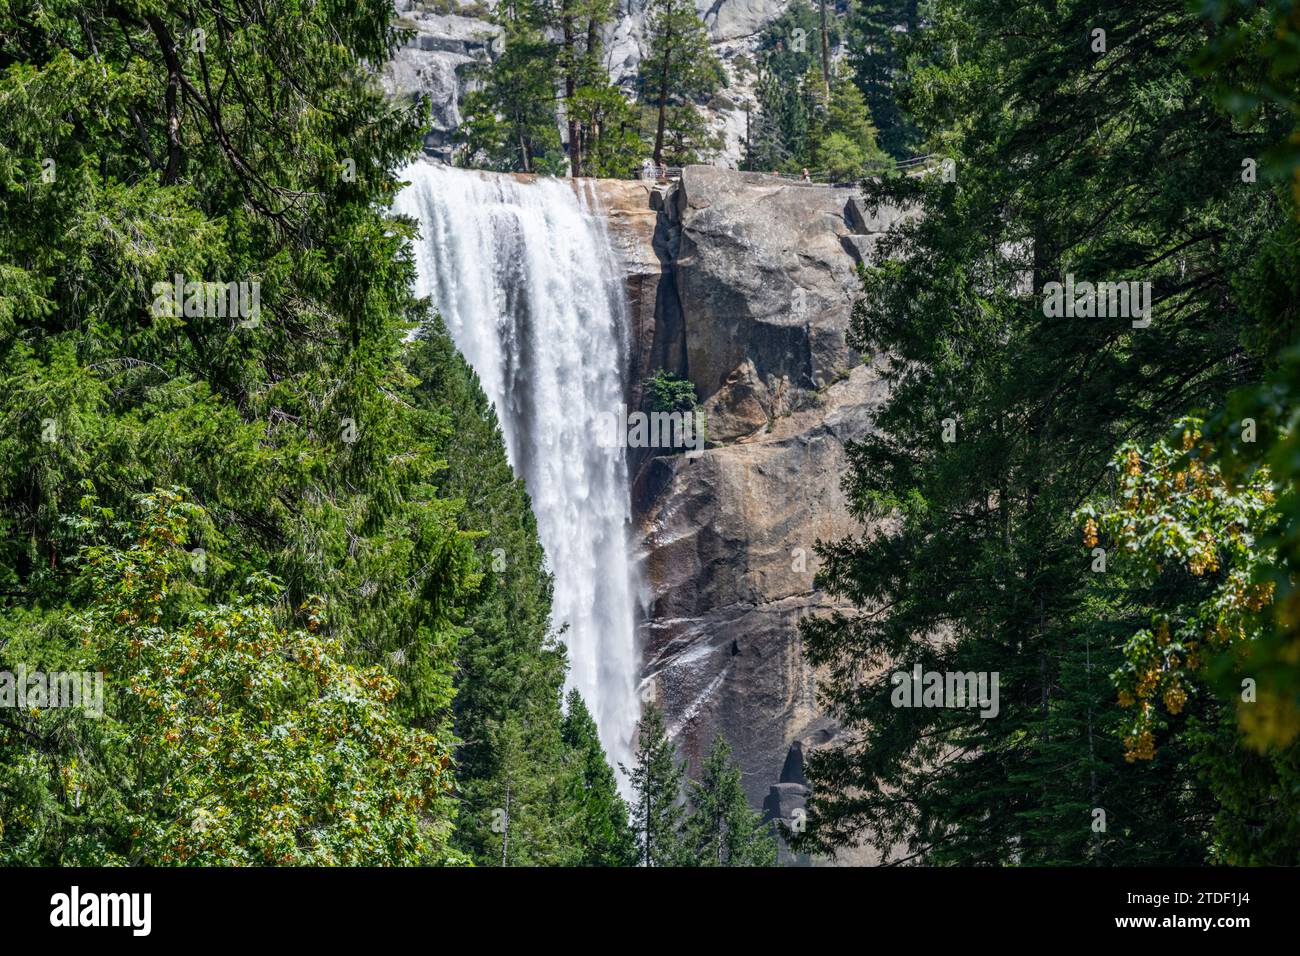 Vernal Falls, parc national de Yosemite, site classé au patrimoine mondial de l'UNESCO, Californie, États-Unis d'Amérique, Amérique du Nord Banque D'Images